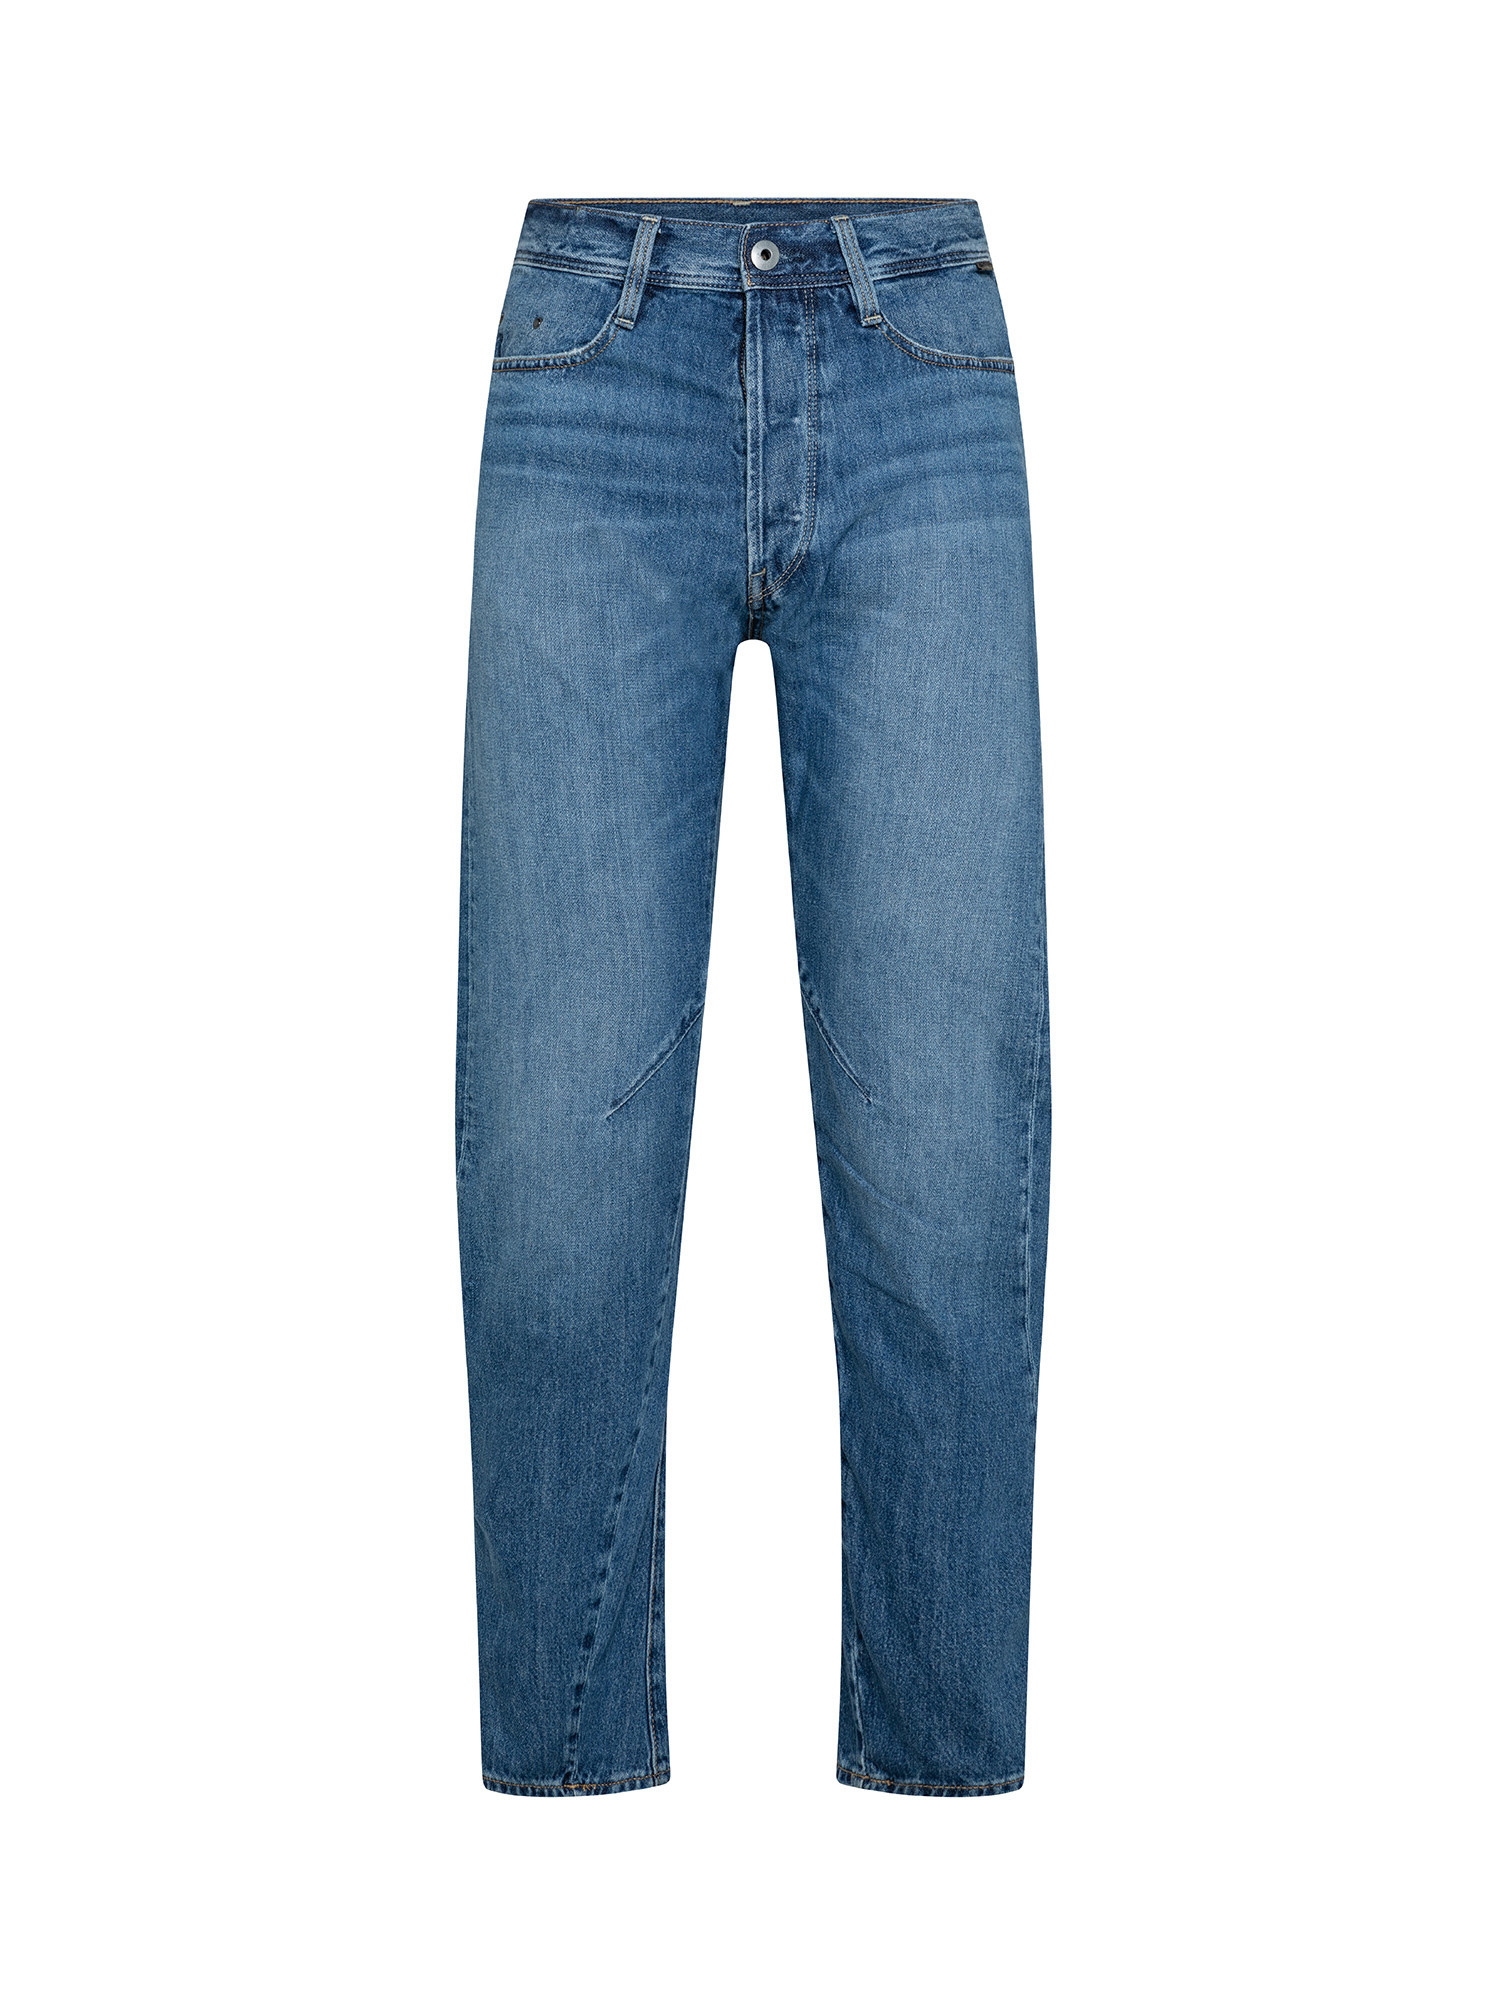 G-Star Five pocket jeans, Denim, large image number 0